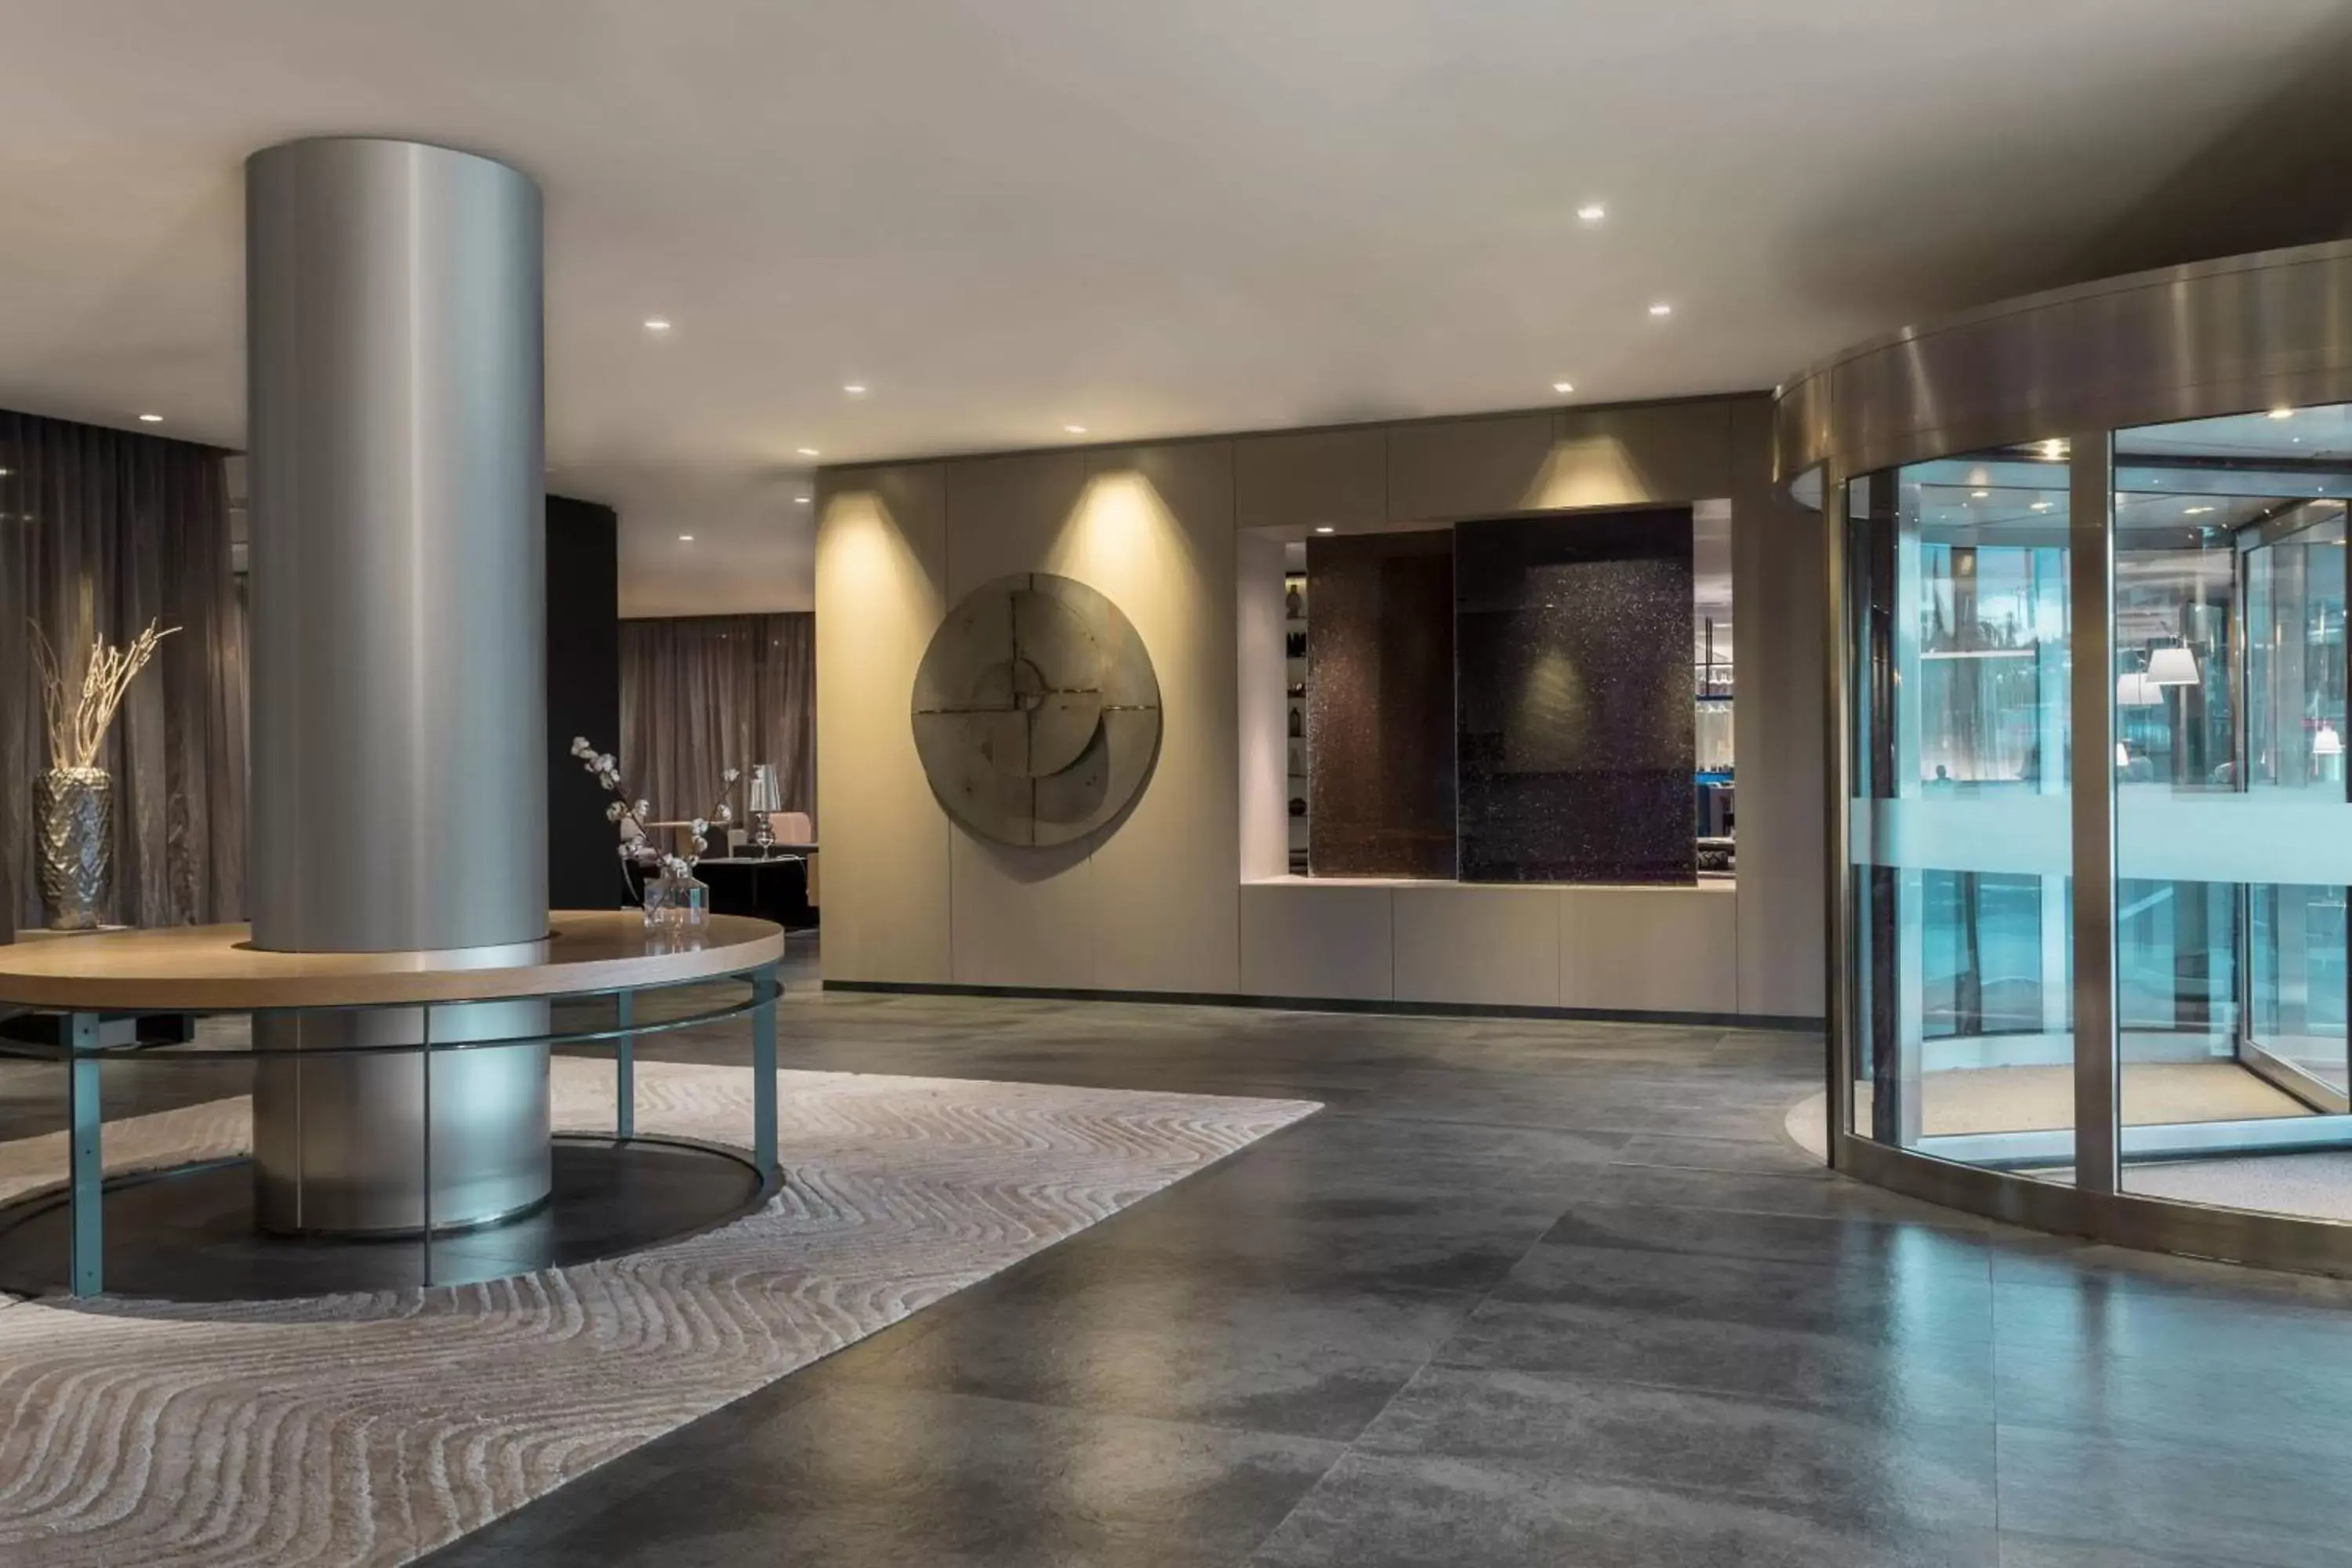 Lobby or reception, Lobby/Reception in AC Hotel La Finca by Marriott